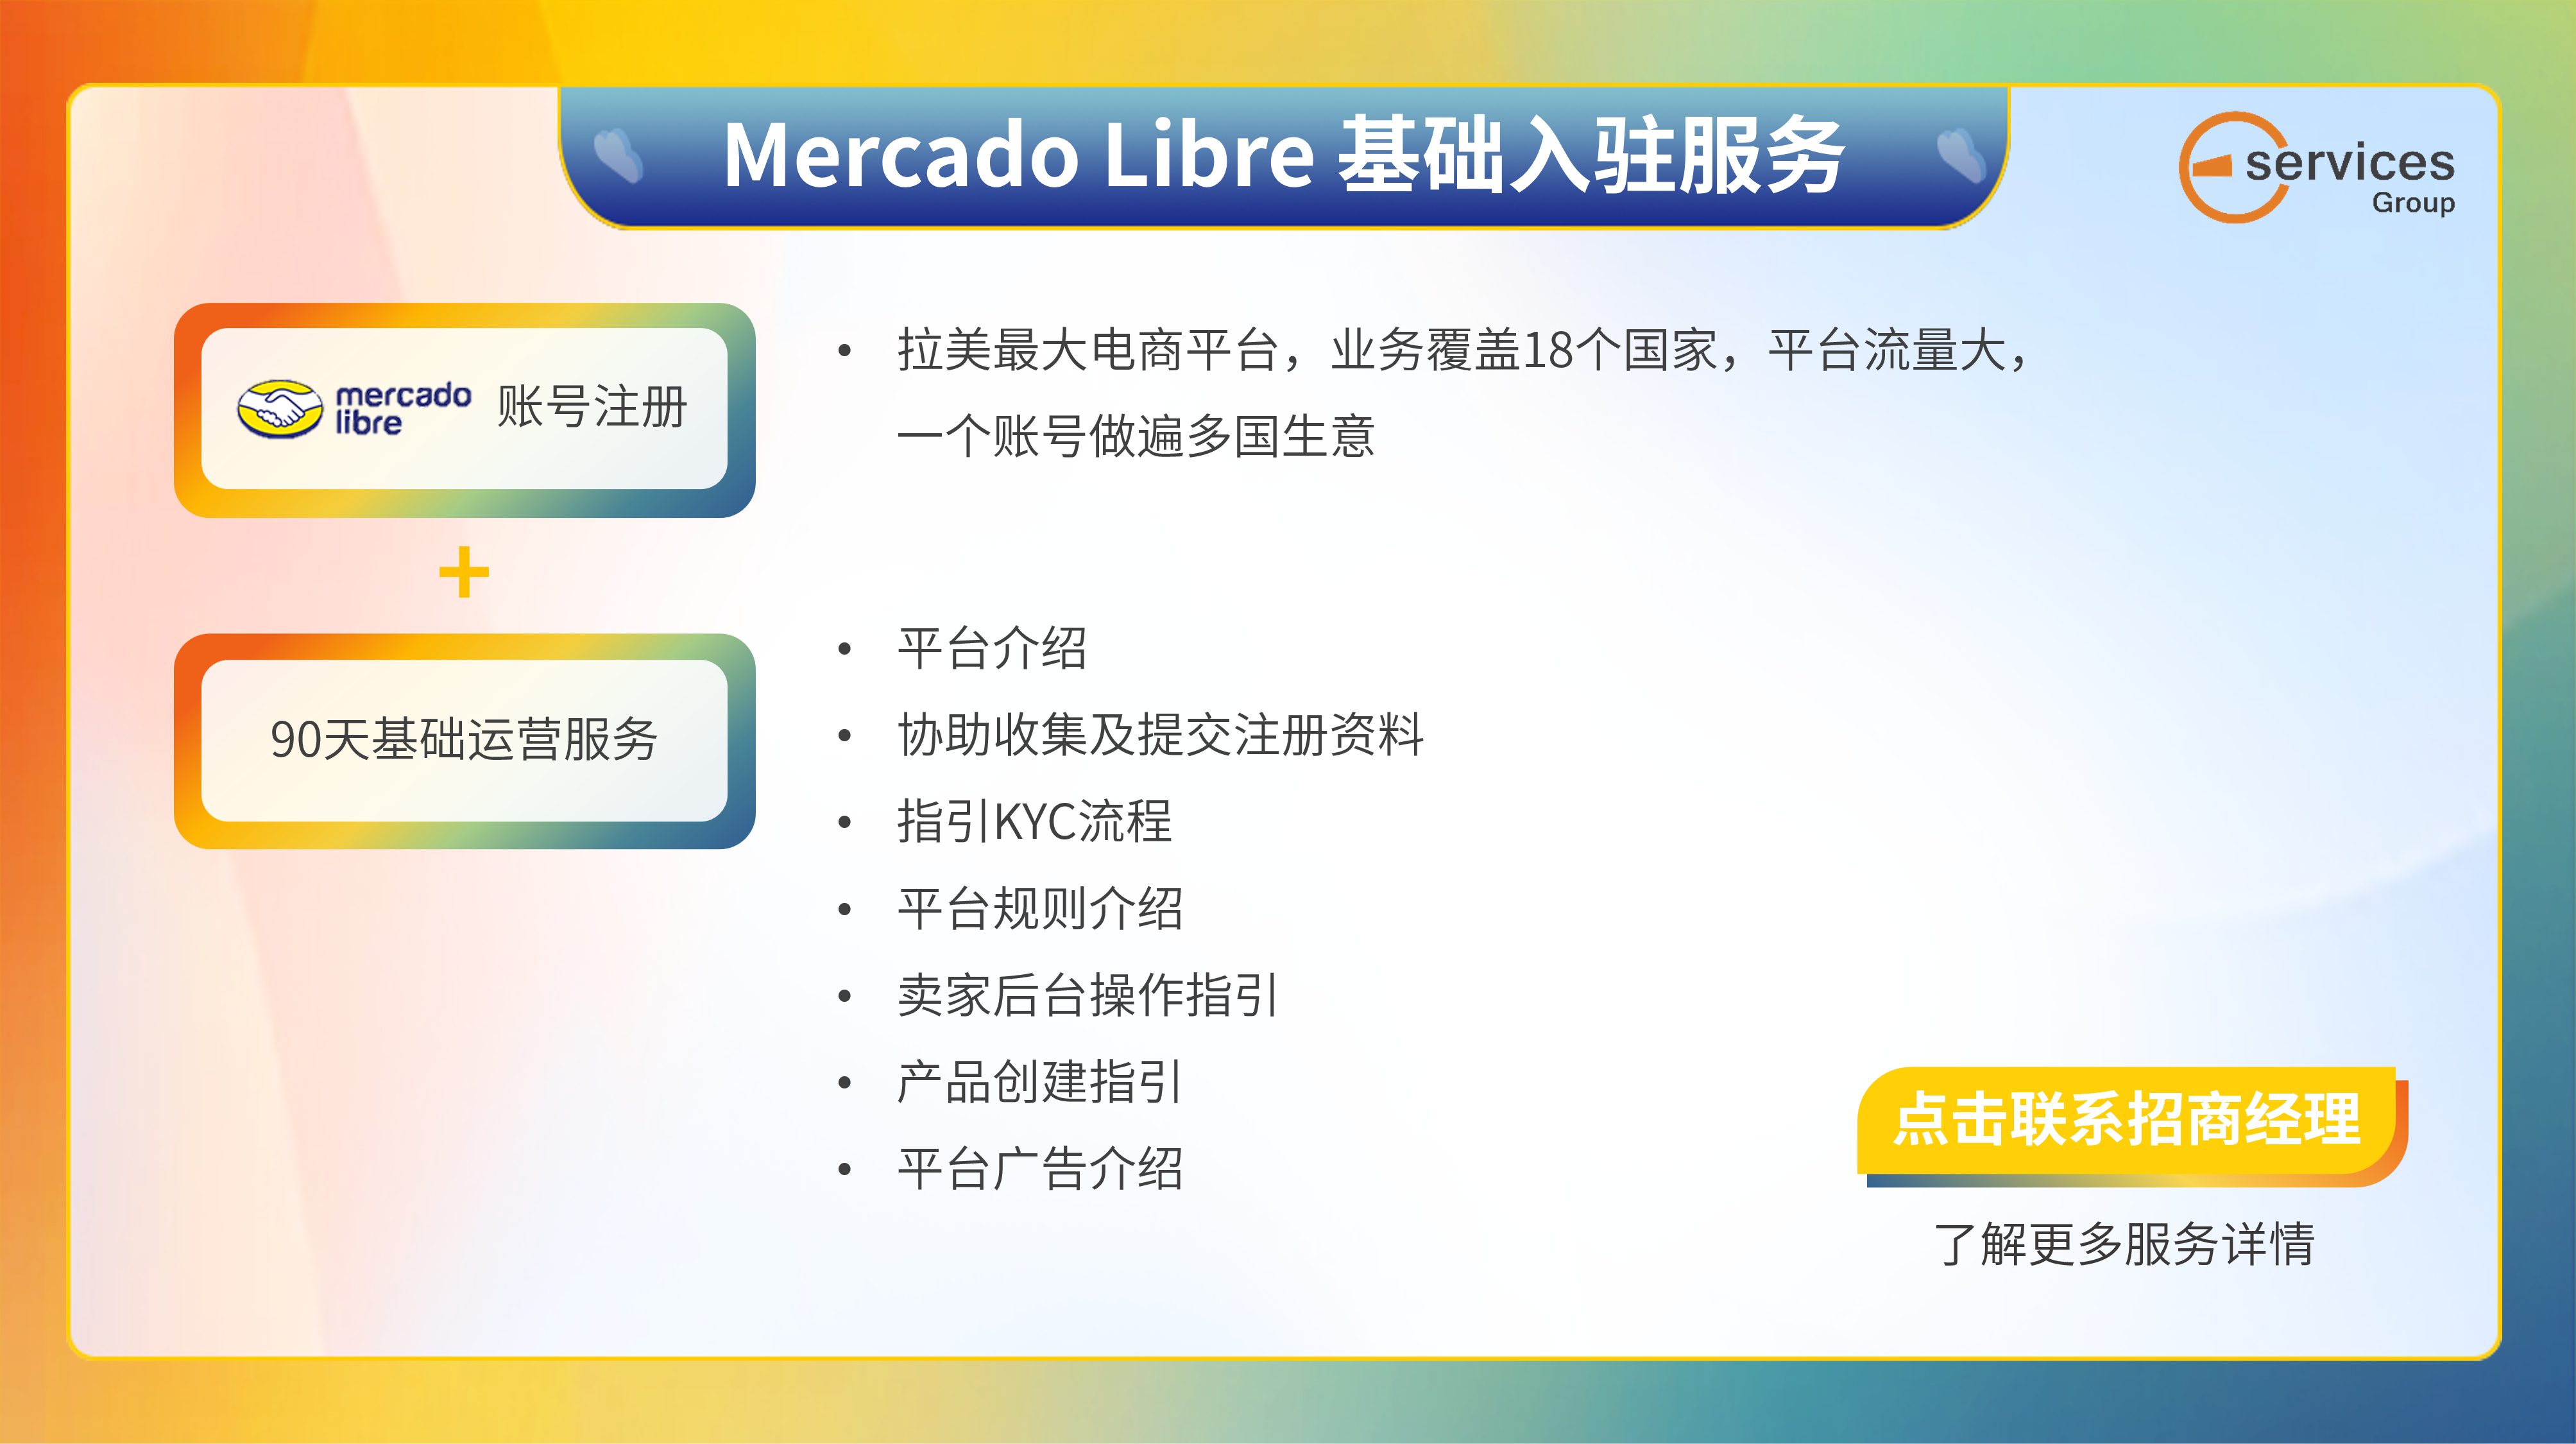 Mercado Libre 基础入驻服务